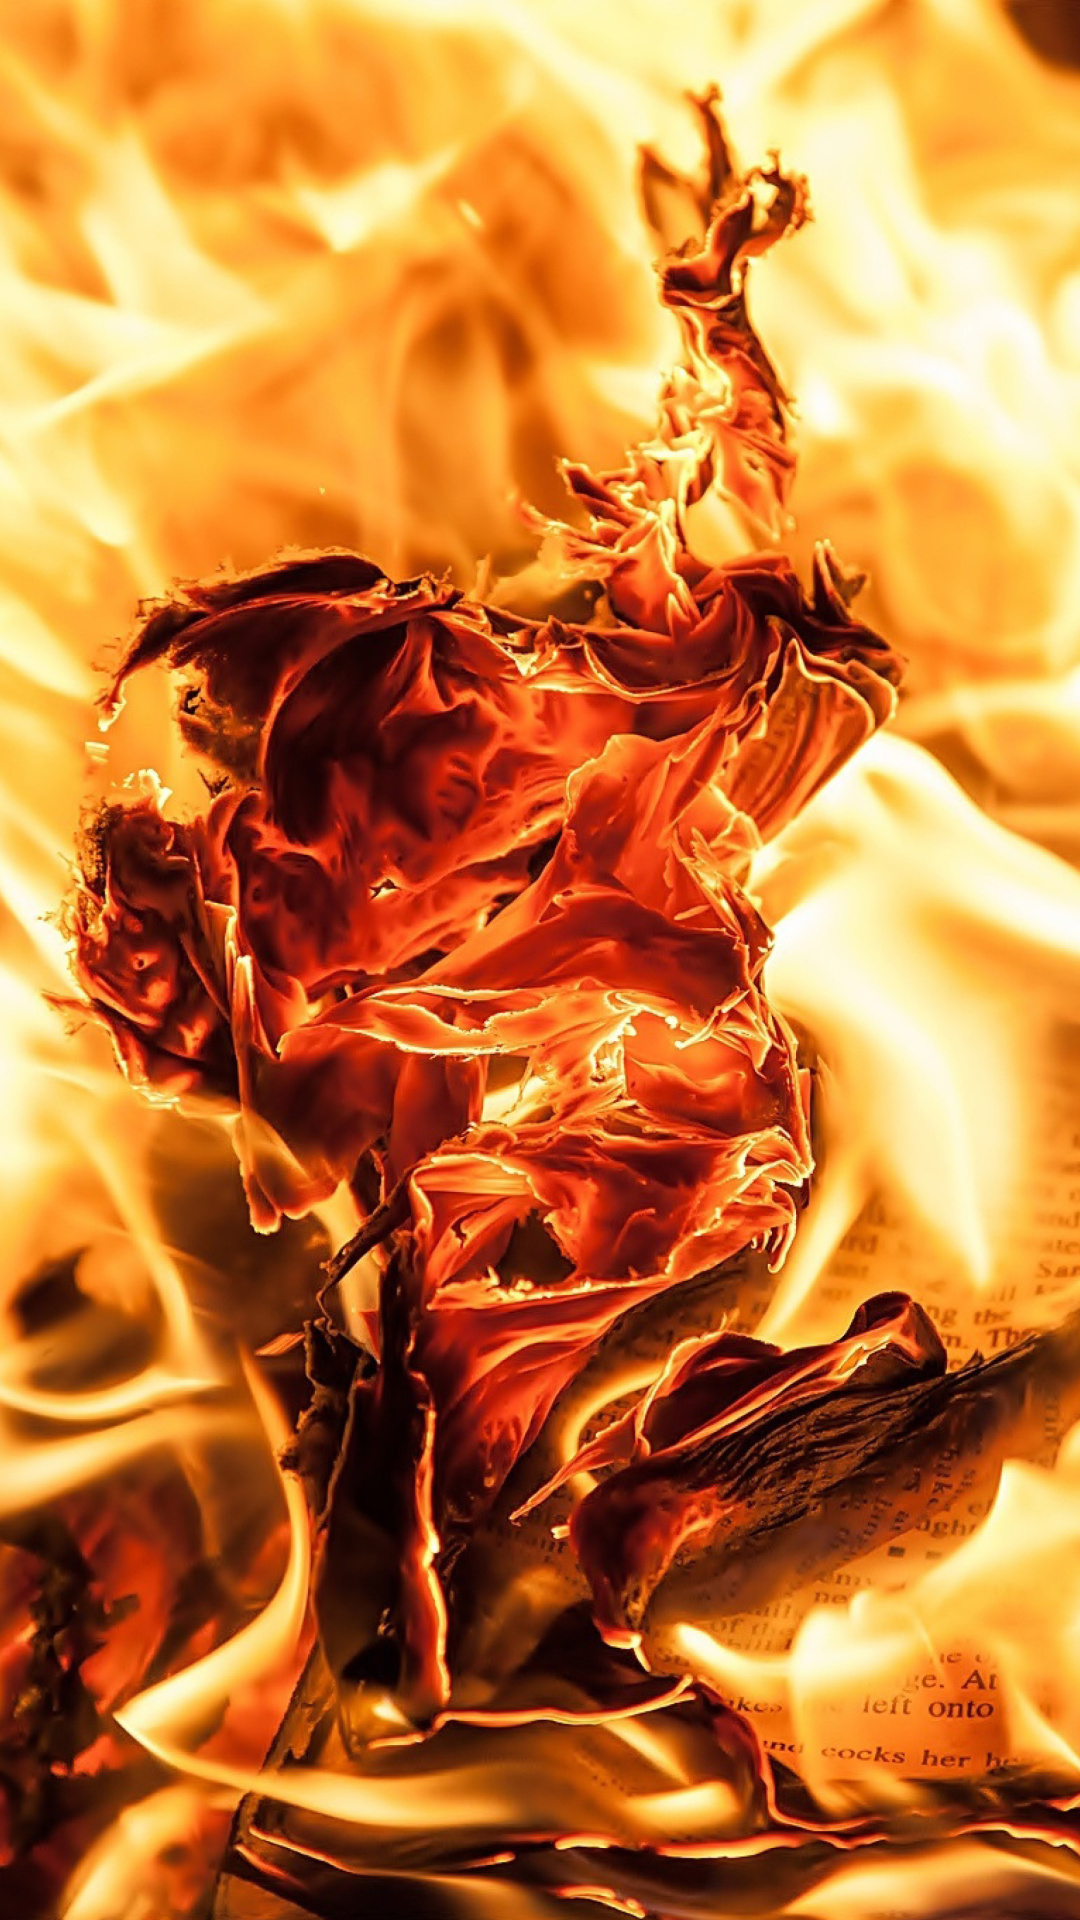 Обои Burn and flames 1080x1920